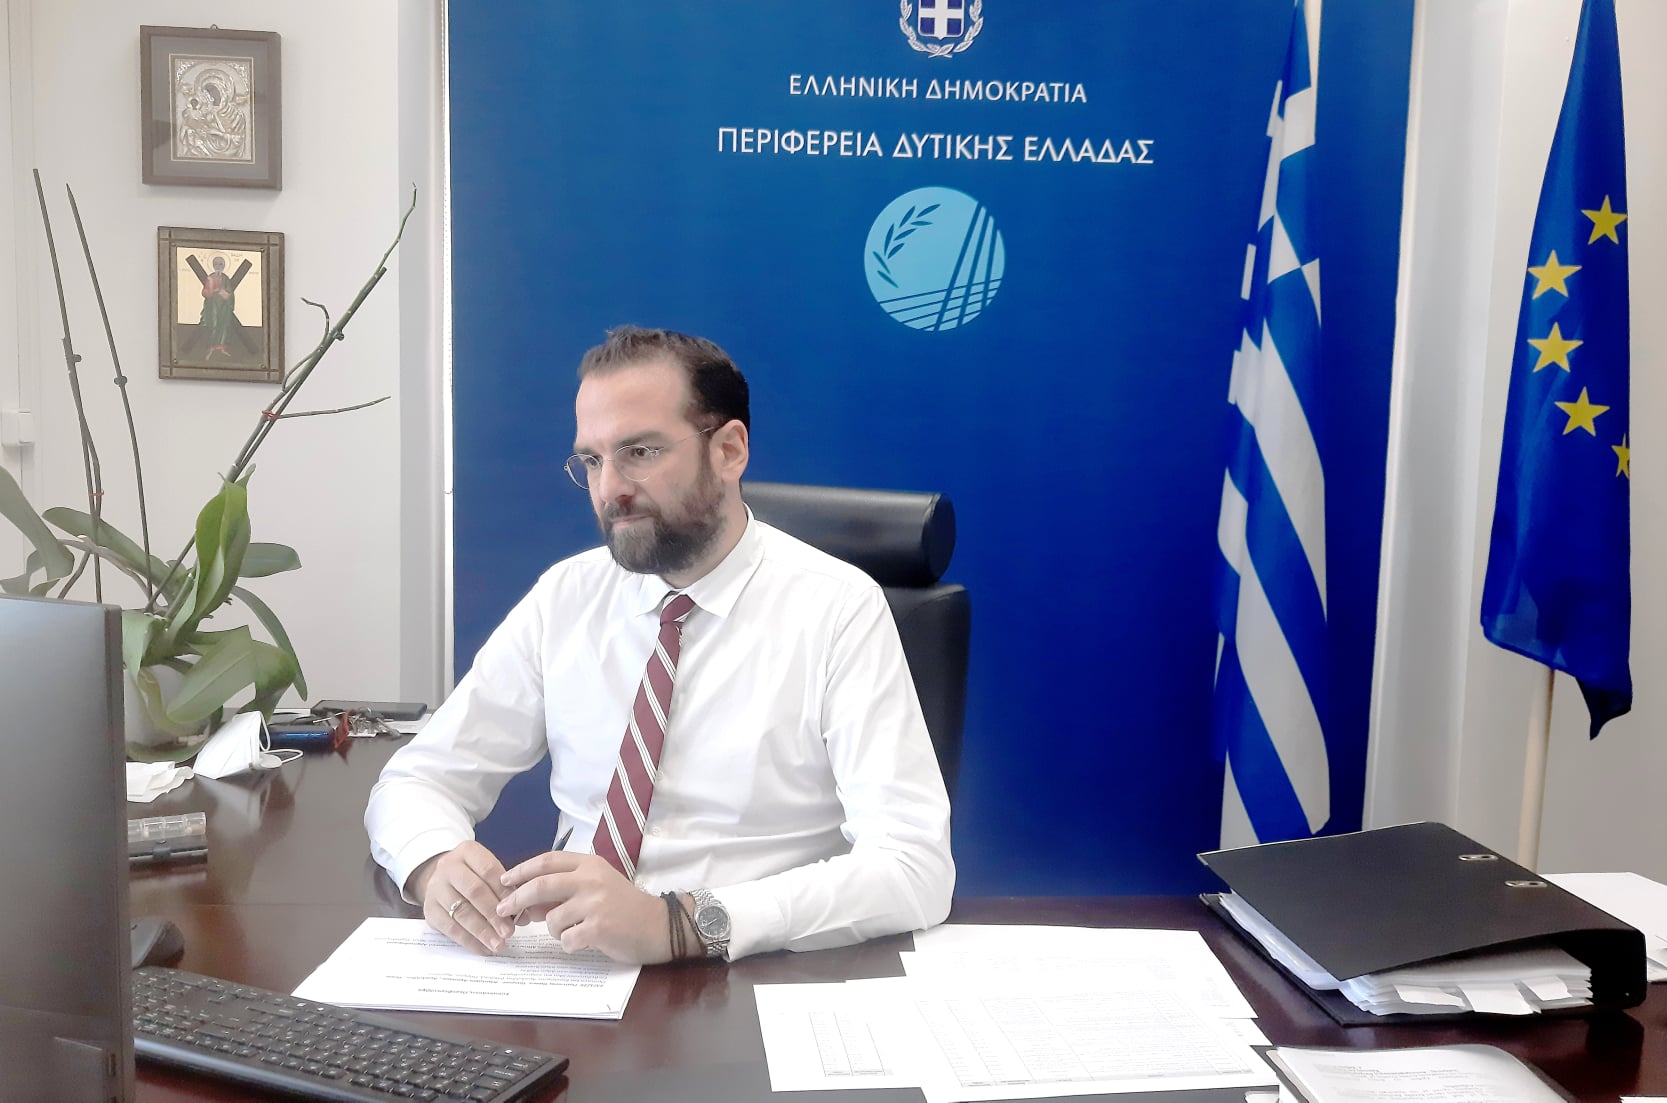 Ν. Φαρμάκης για το νέο 4ετές Επιχειρησιακό Σχέδιο της Περιφέρειας Δυτικής Ελλάδας: «Ήρθε η ώρα να βγούμε μπροστά για ένα νέο μοντέλο ανάπτυξης» (photos)